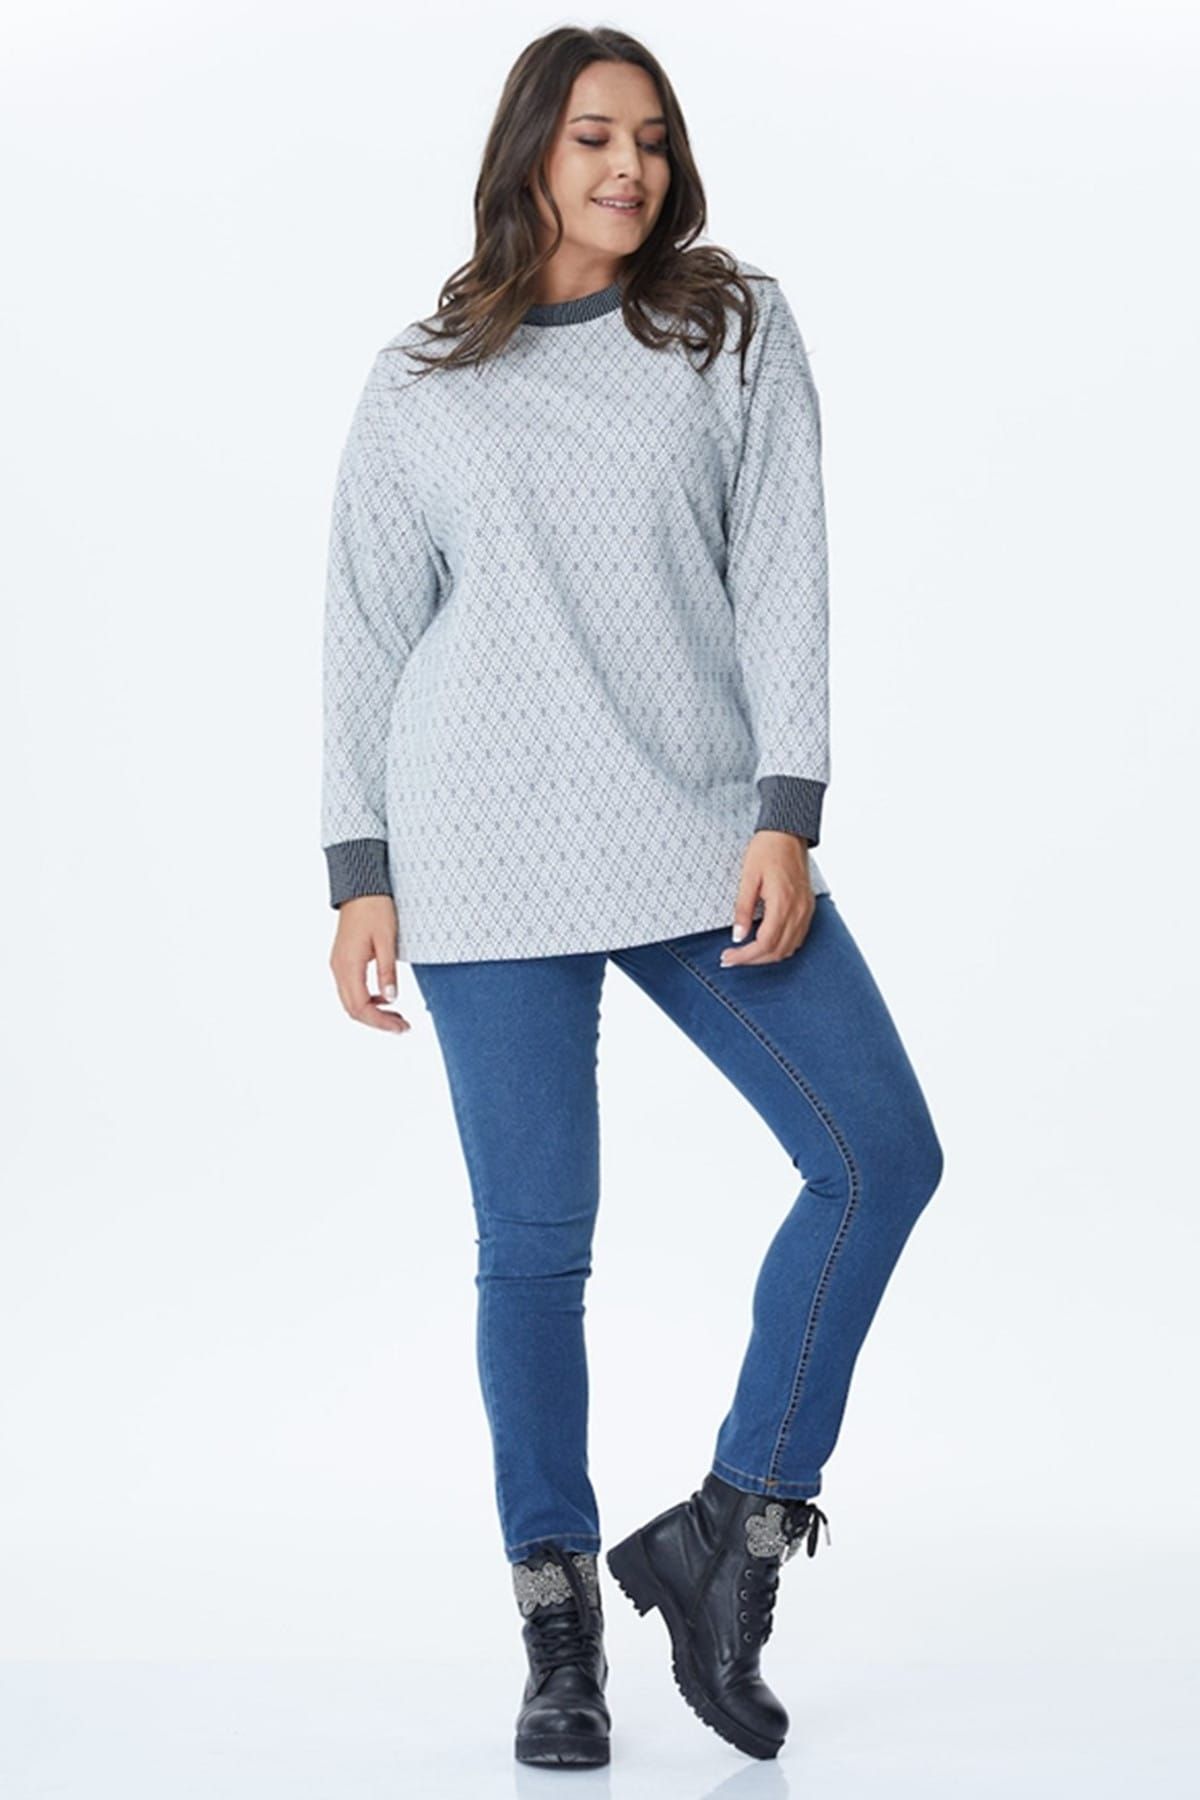 Myline Kadın Krem Mavi Desenli Yaka Ve Kol Bantları Kontrast Sweatshirt 34260